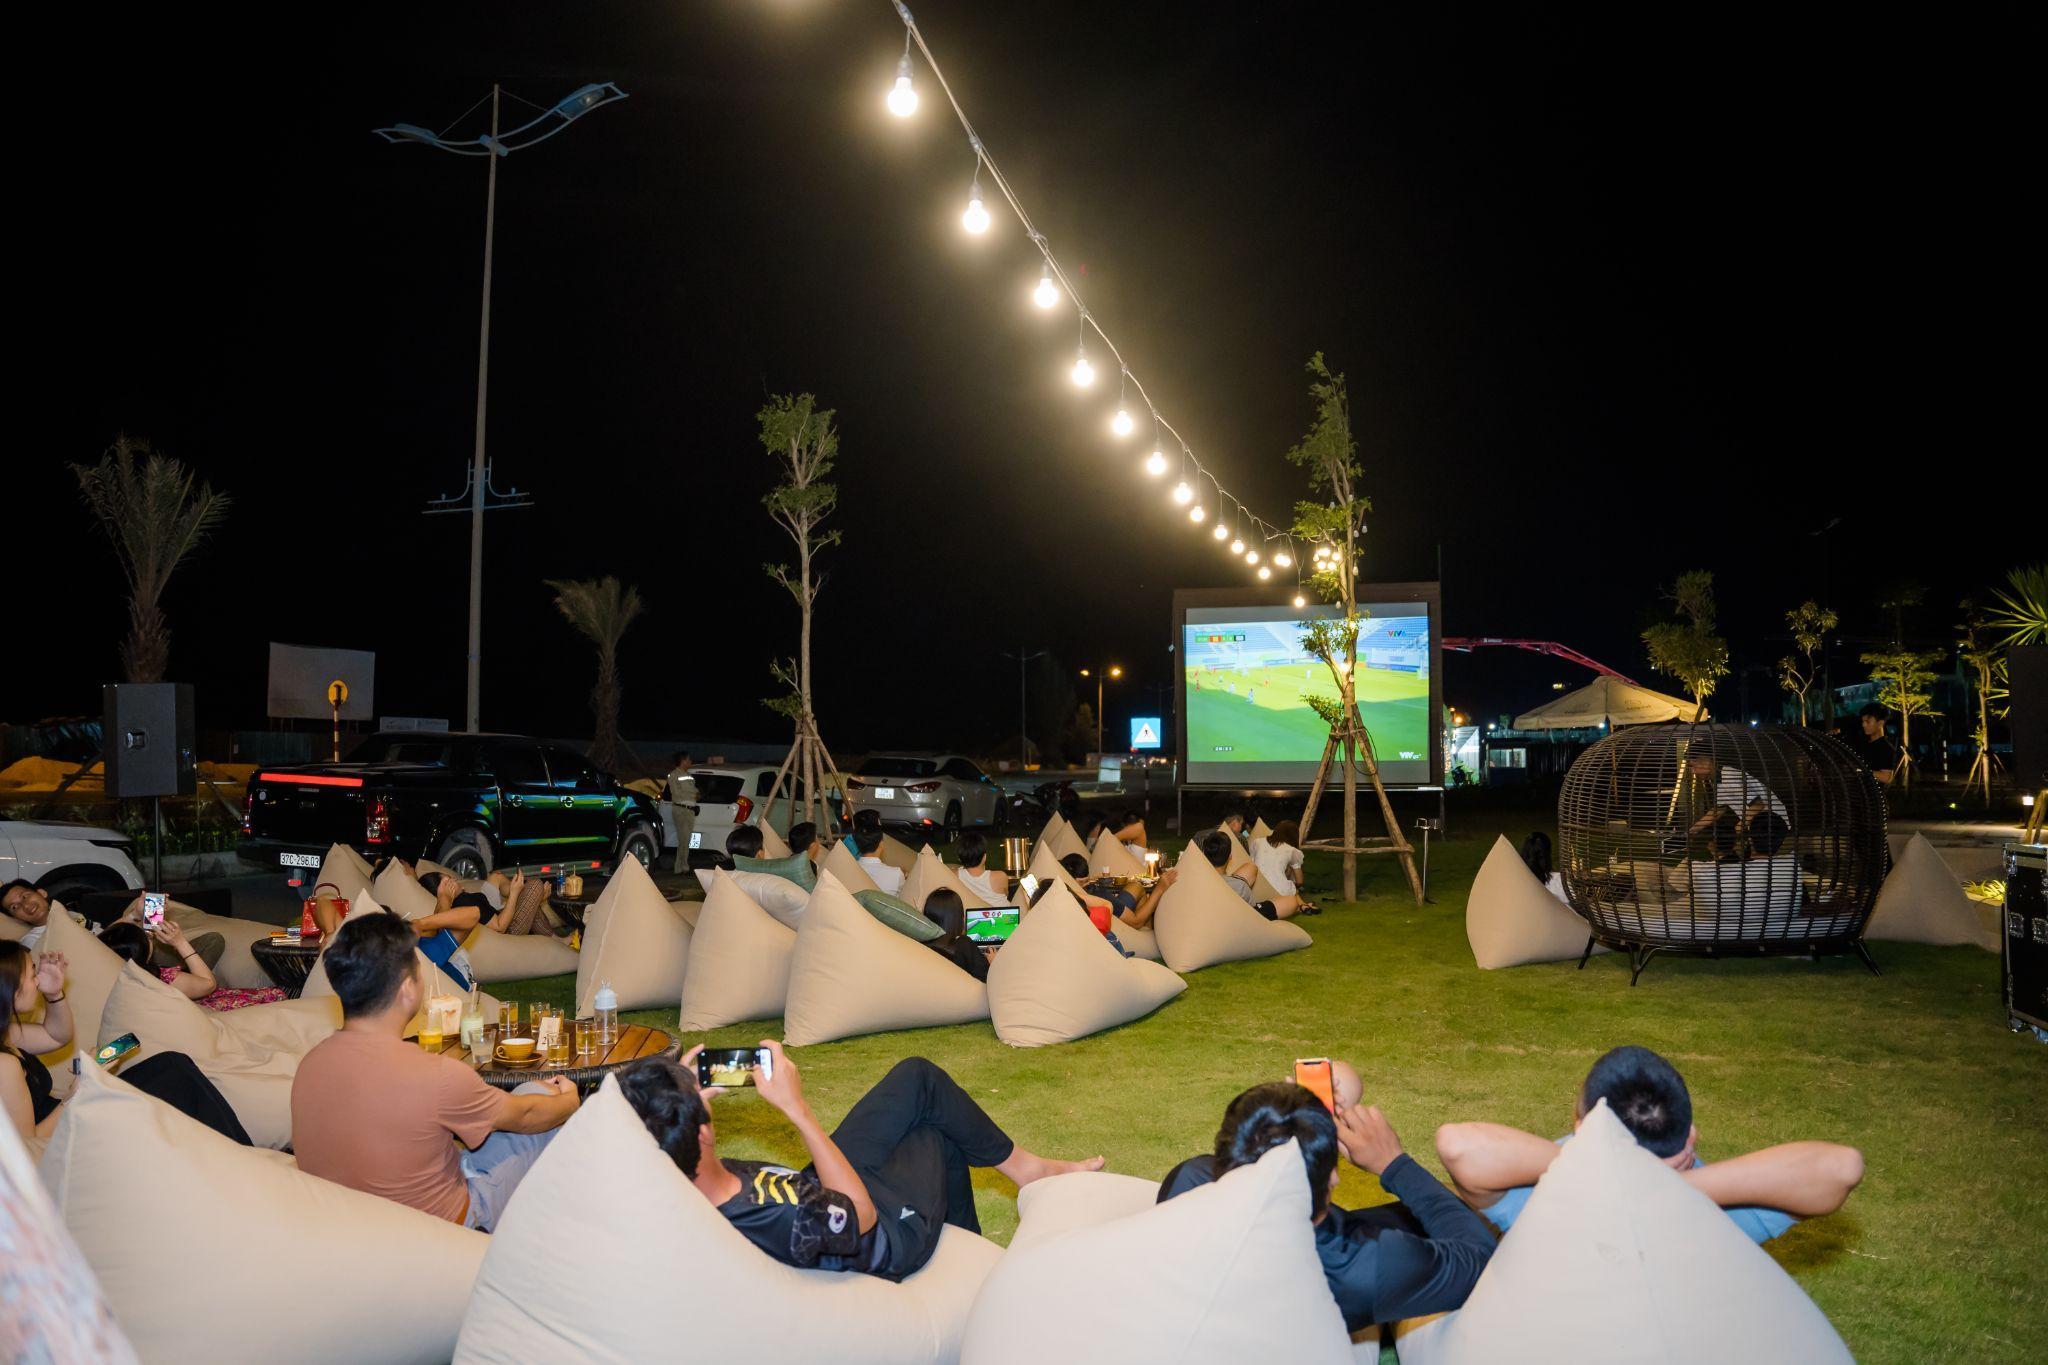 Phong cách xem phim ngoài trời tại Regal Legend thu hút đông đảo du khách và cư dân địa phương